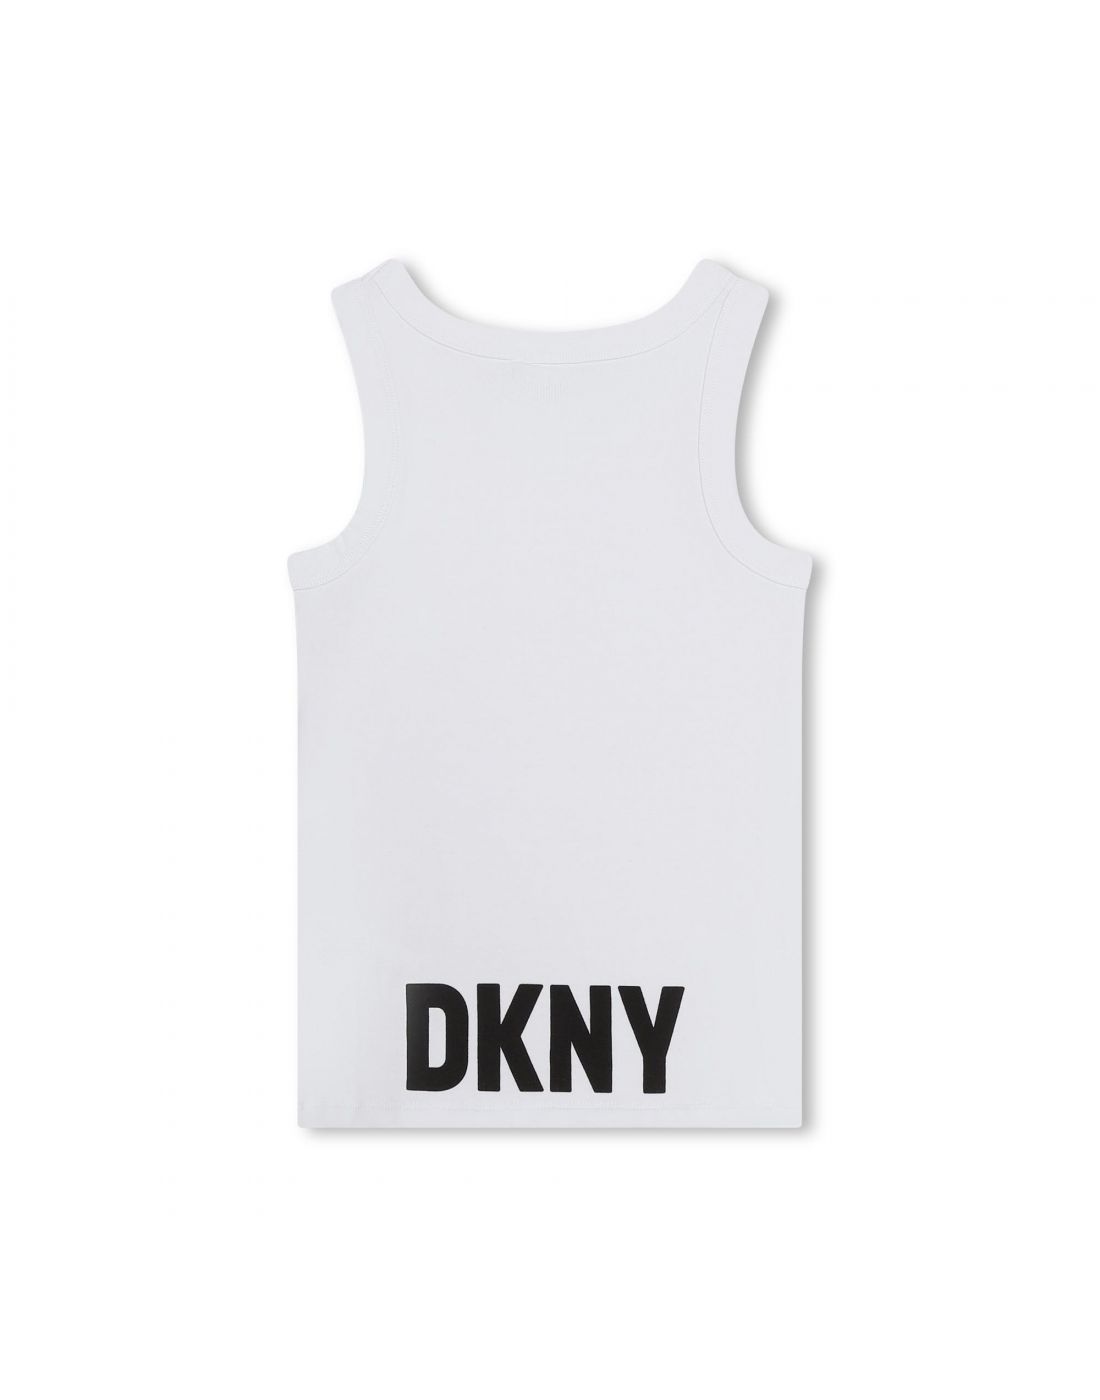 D.K.N.Y Kids' Shirt